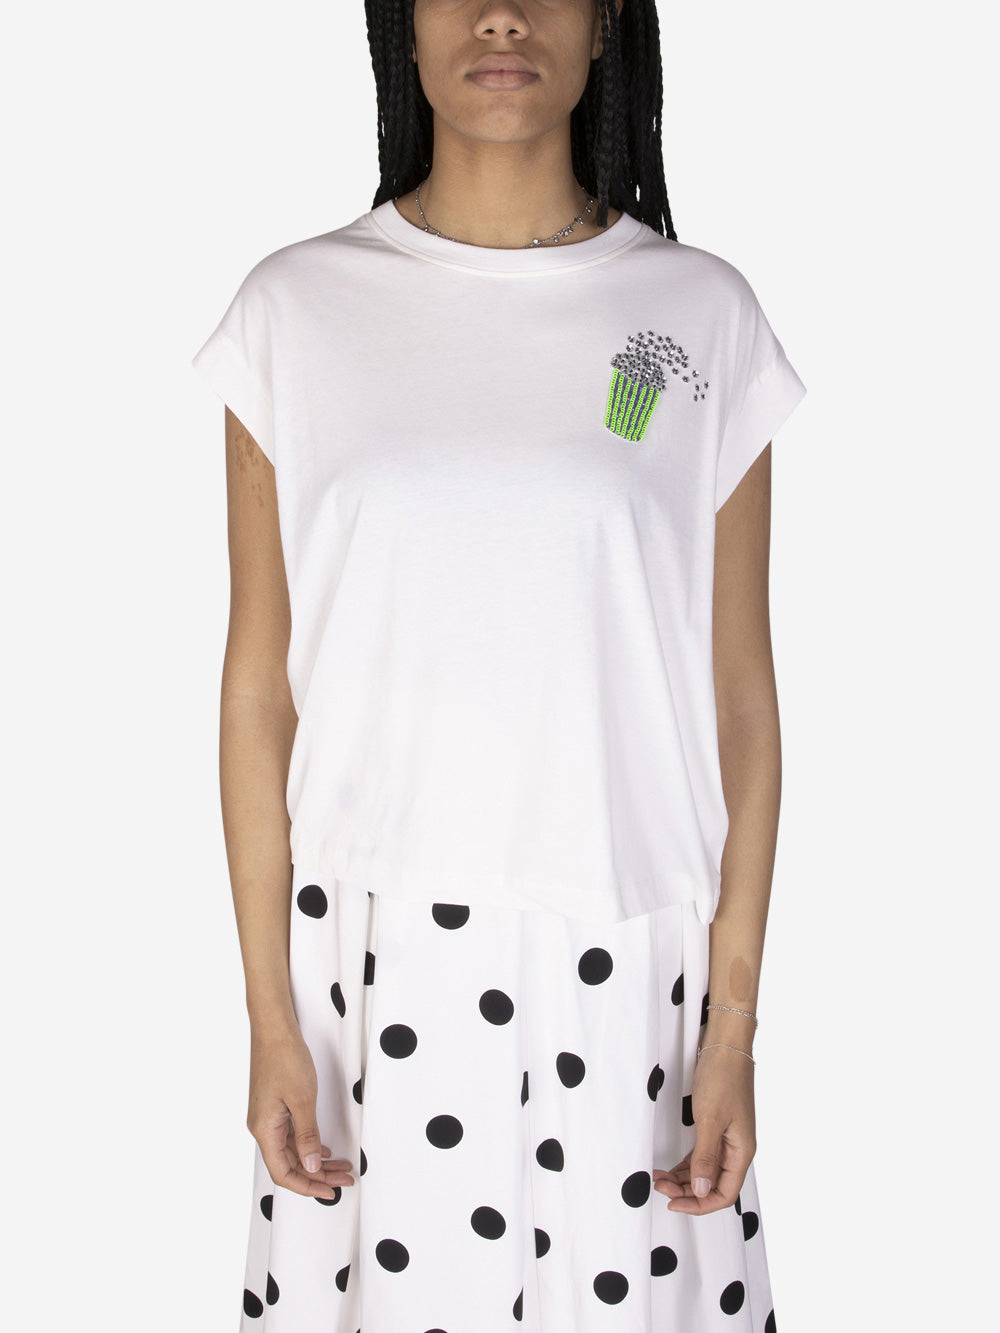 ESSENTIEL ANTWERP T-shirt con ricamo Bianco Urbanstaroma